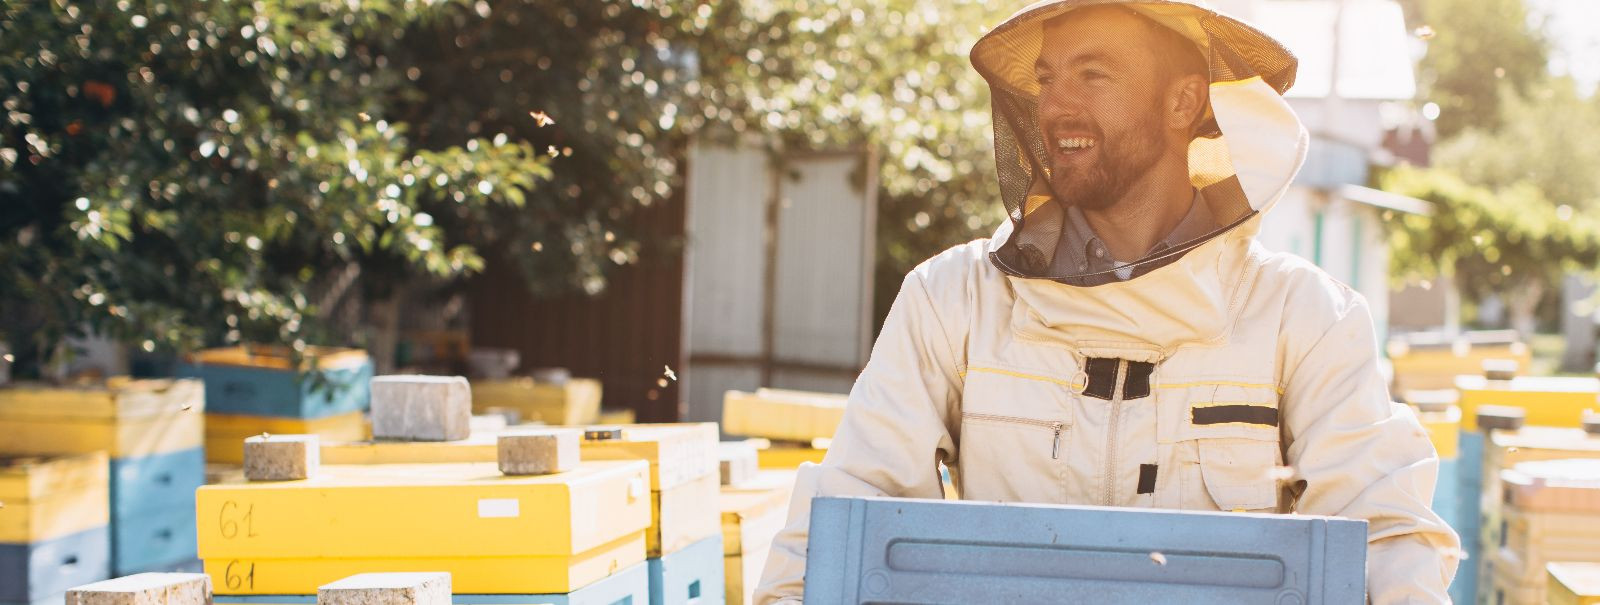 Jätkusuutlik mesindus on lähenemine, mis rõhutab mesilaste ...